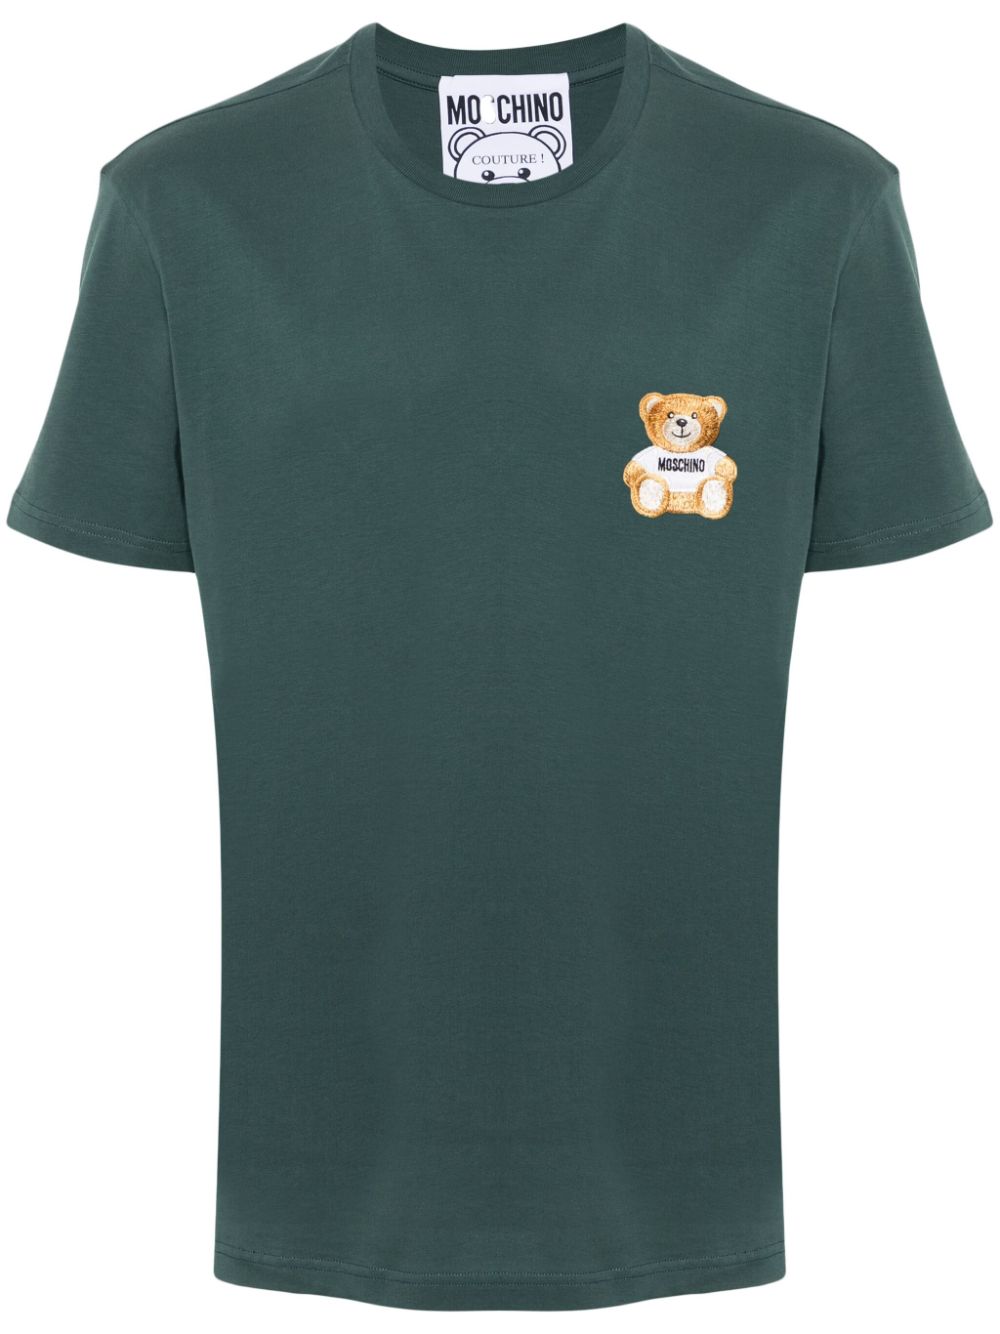 Moschino T-shirt Mit Teddy In Grün